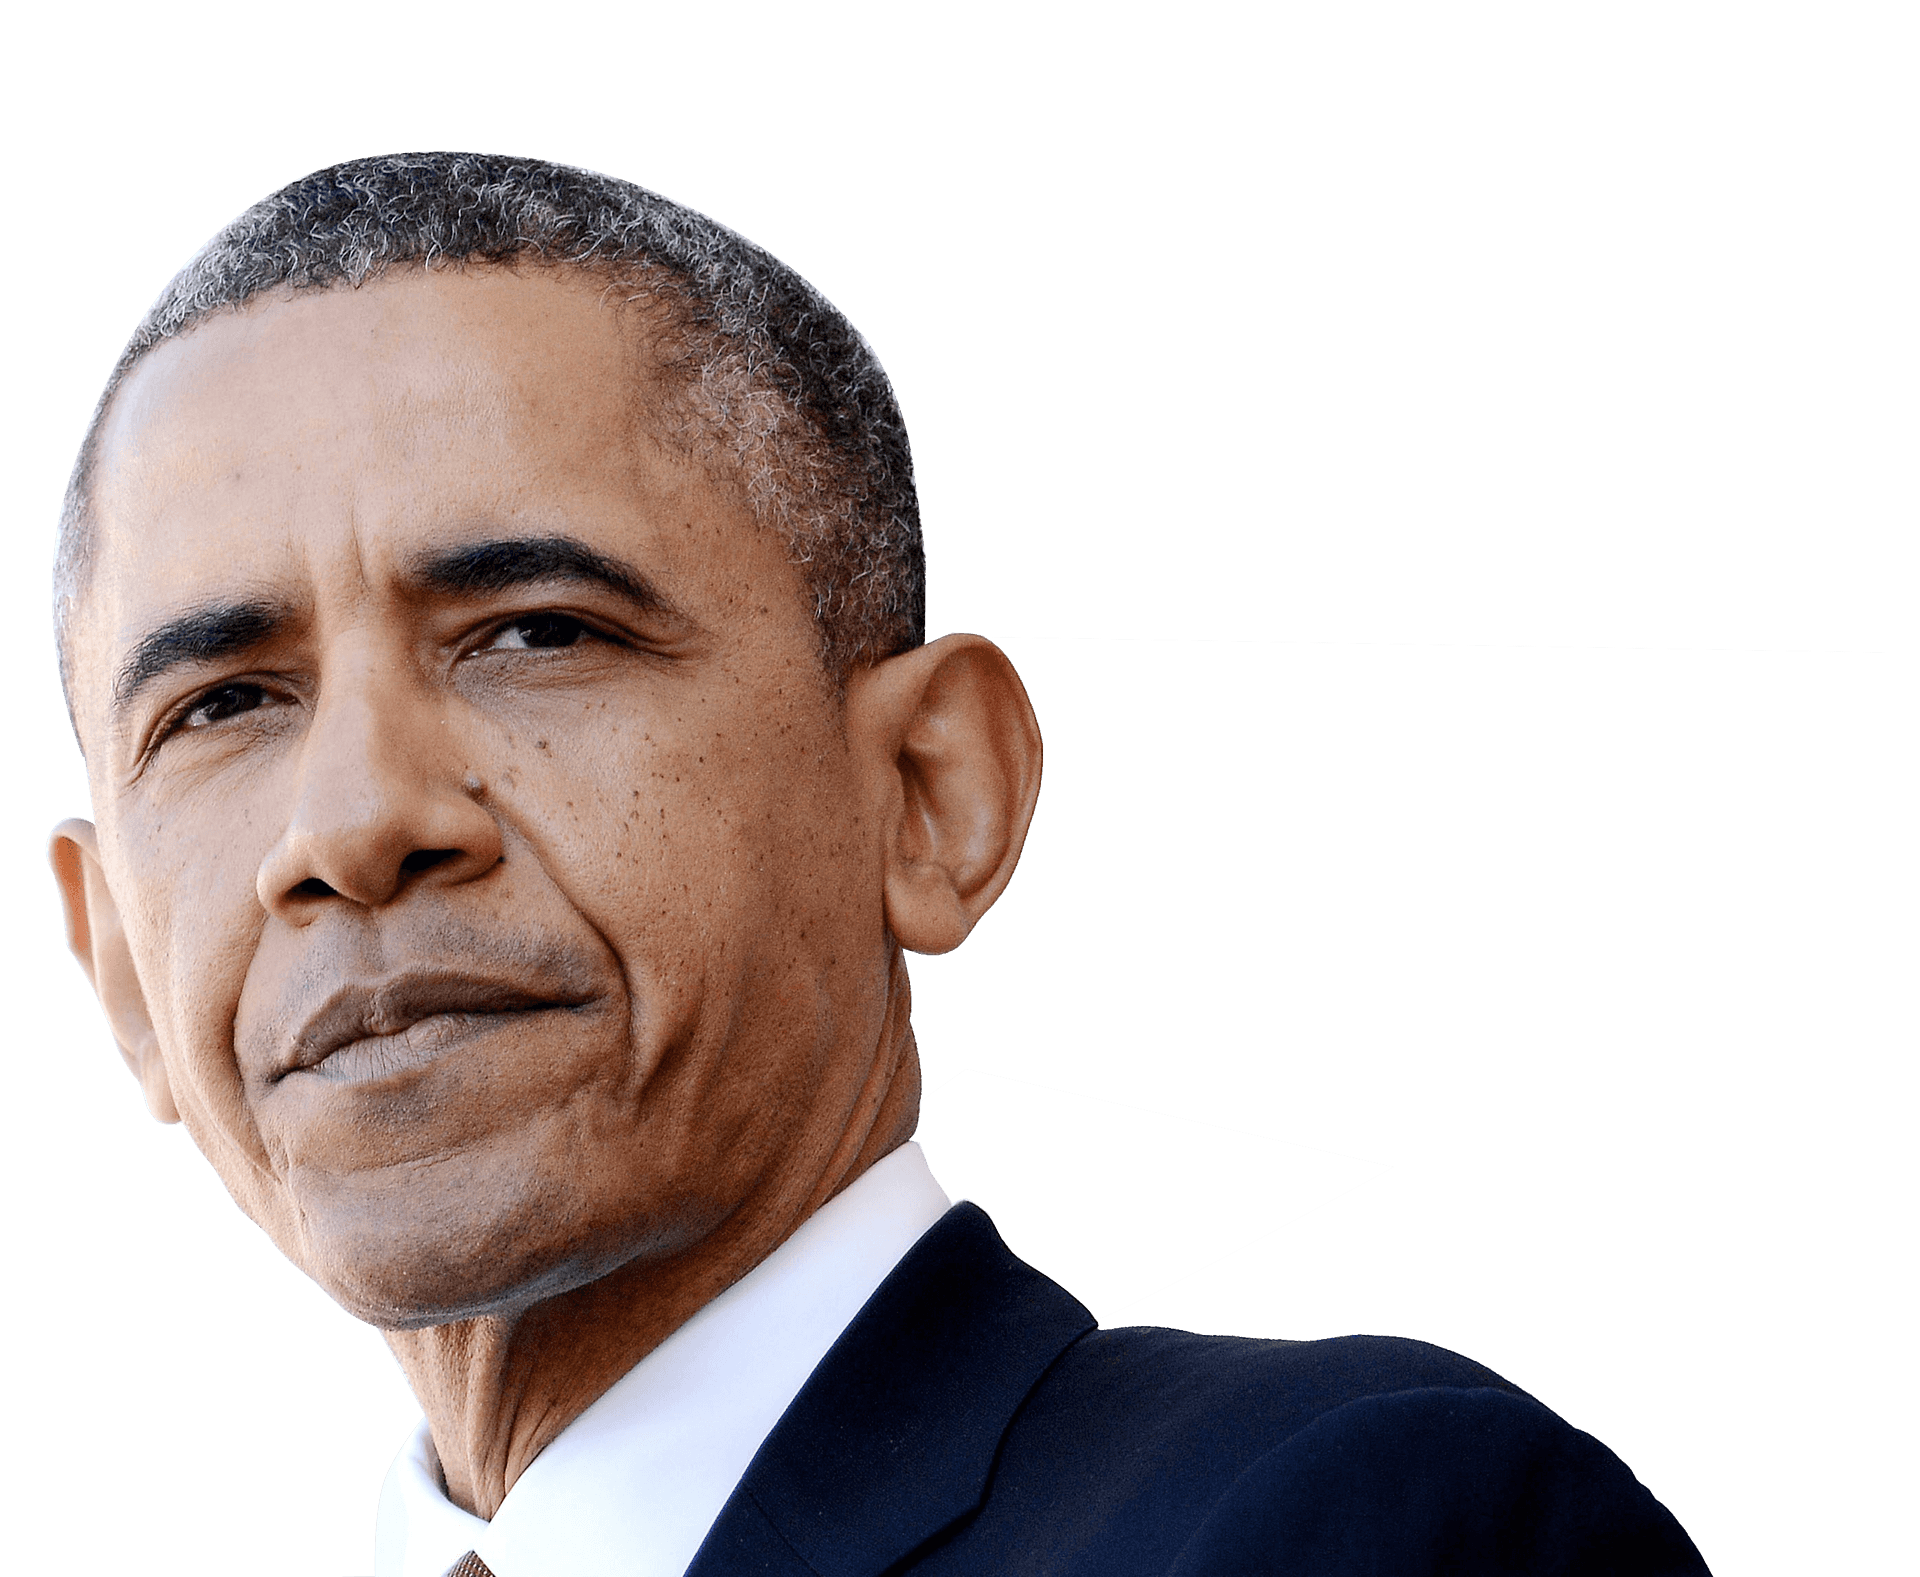 Barack Obama Portrait PNG image